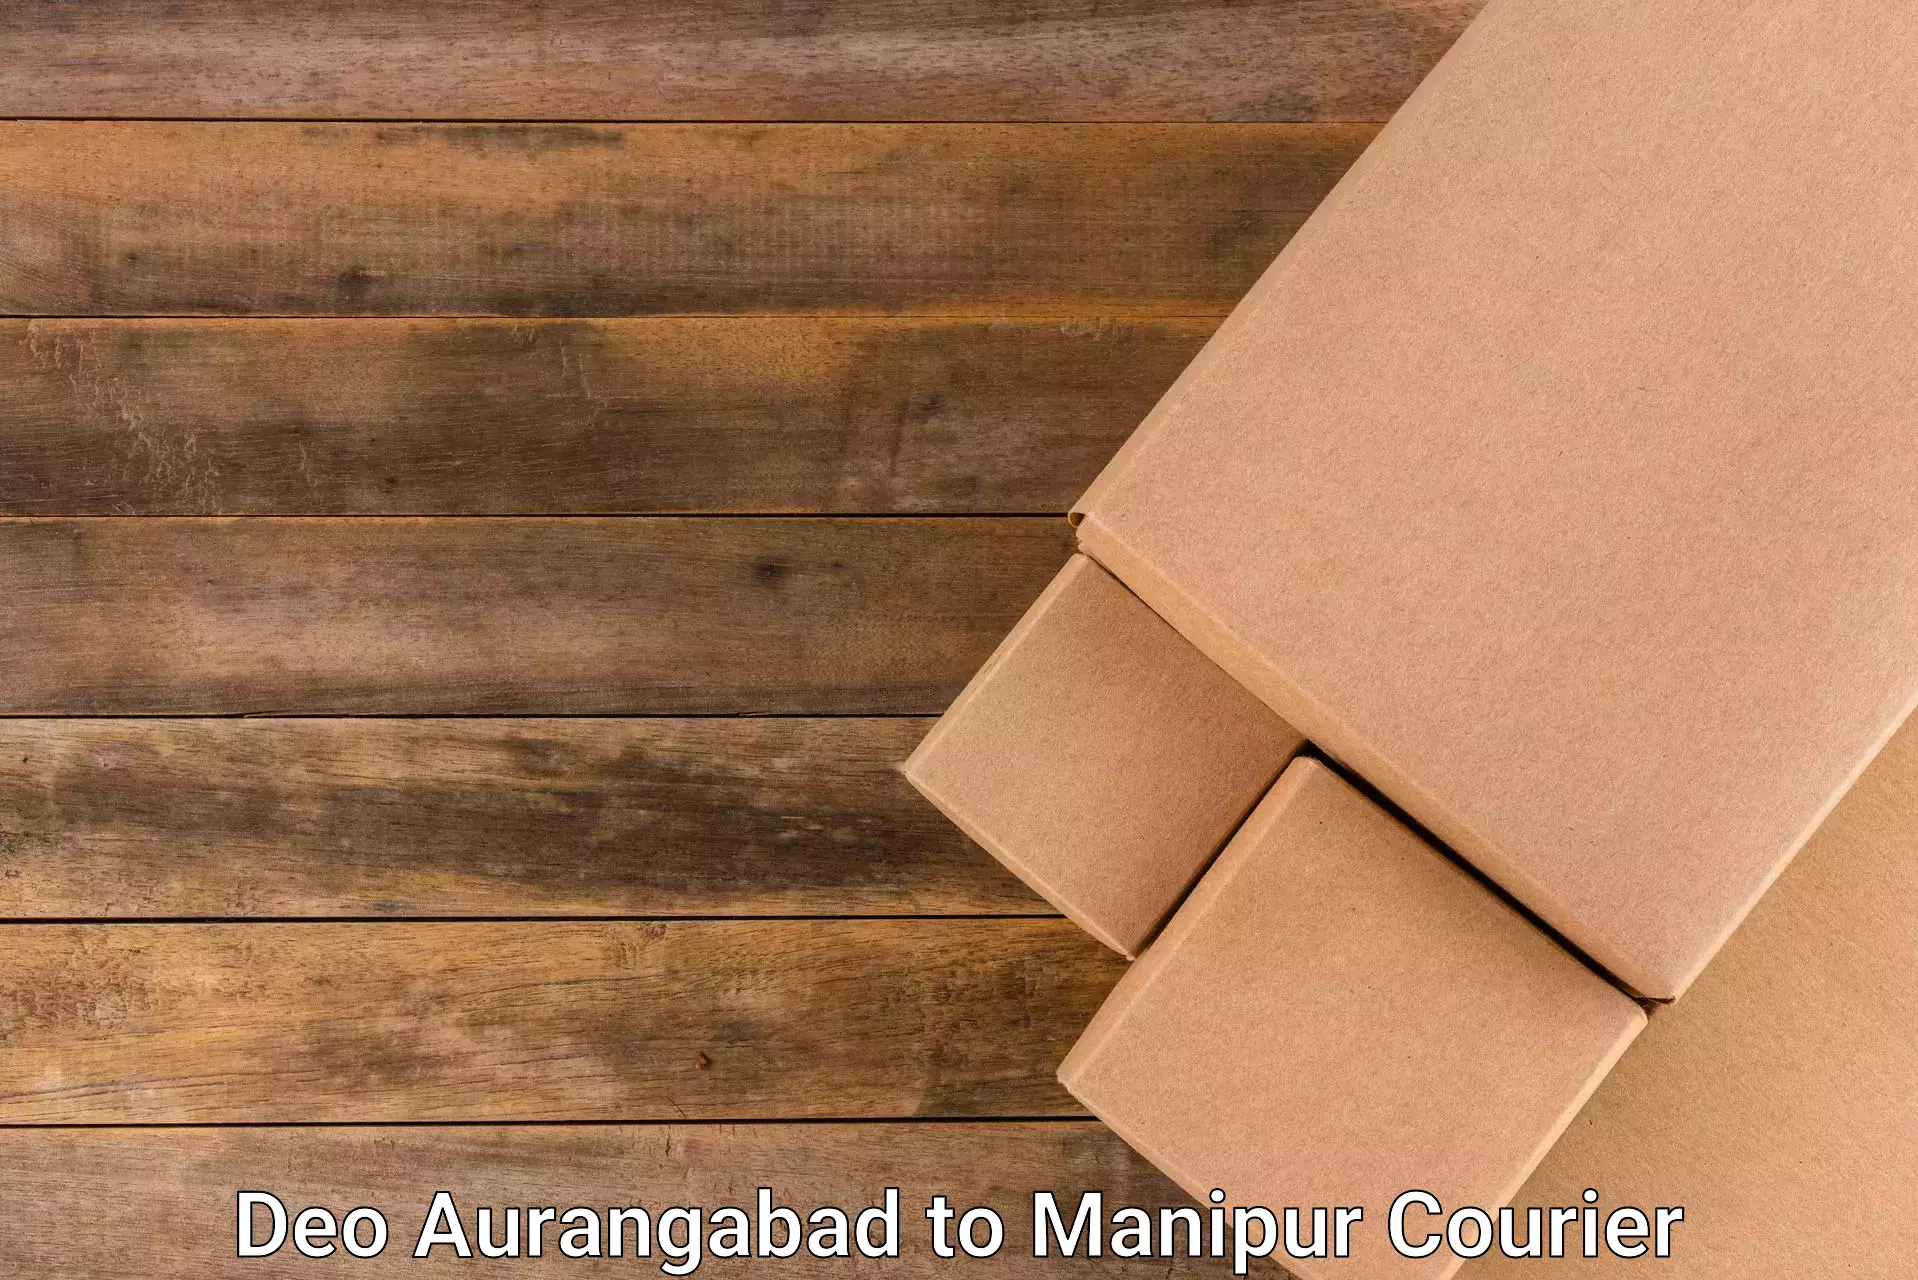 Smart courier technologies Deo Aurangabad to Chandel